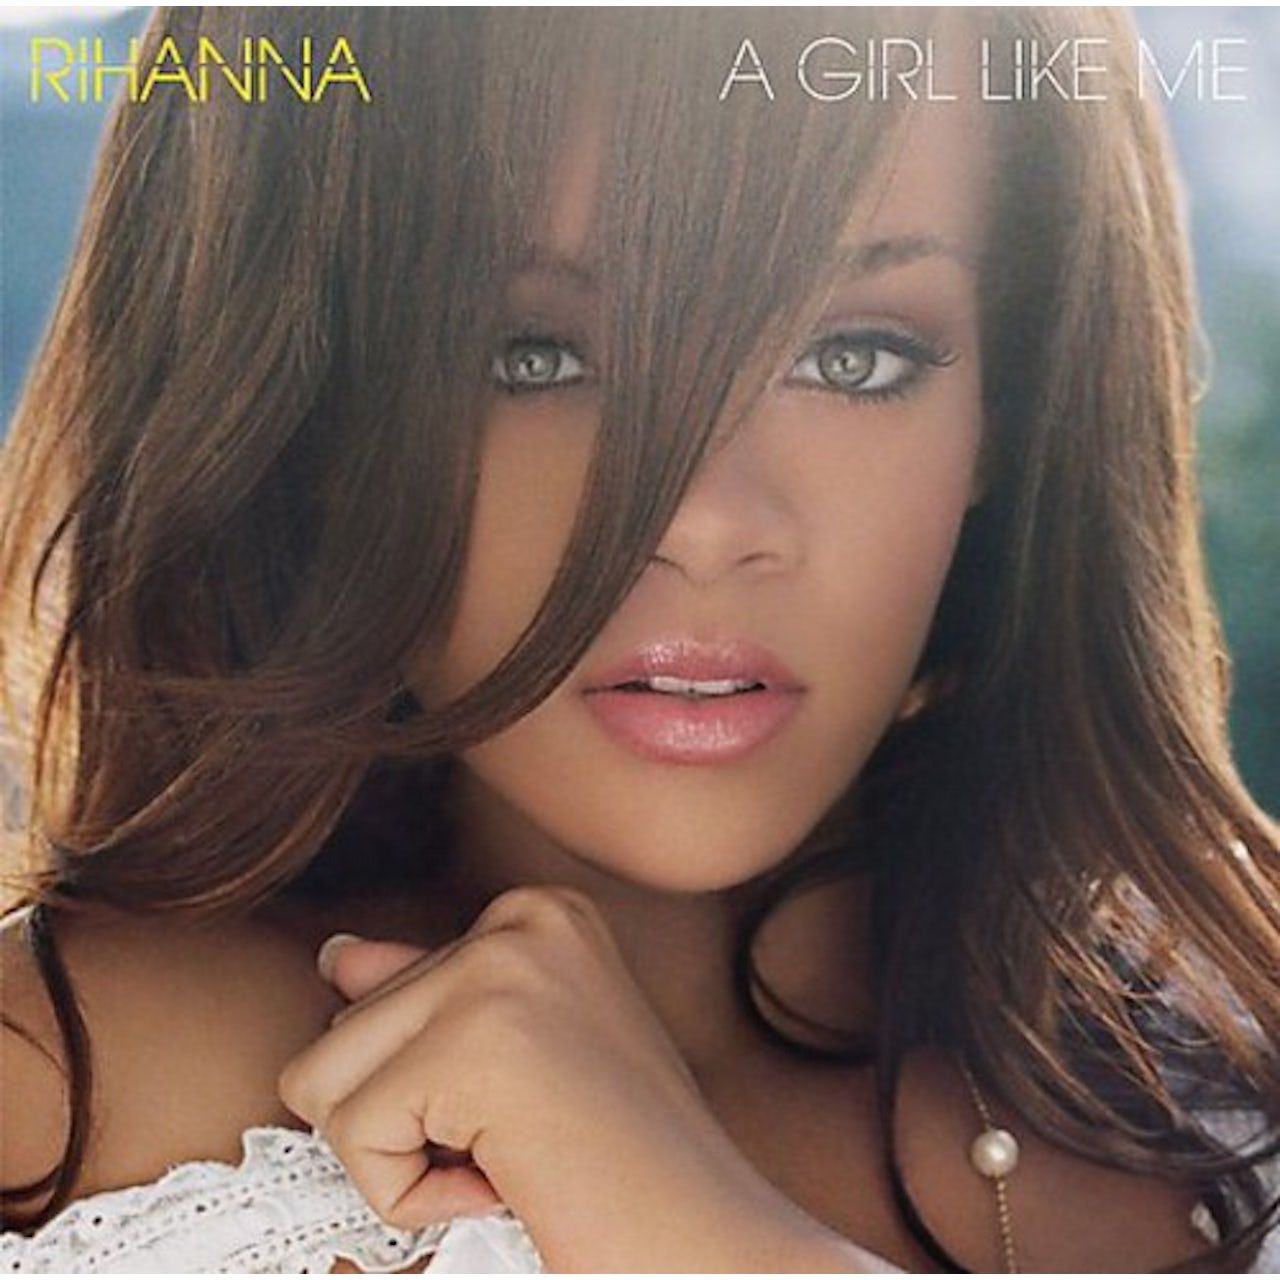 Виниловая пластинка Rihanna, A Girl Like Me (0602498798980) rihanna – a girl like me